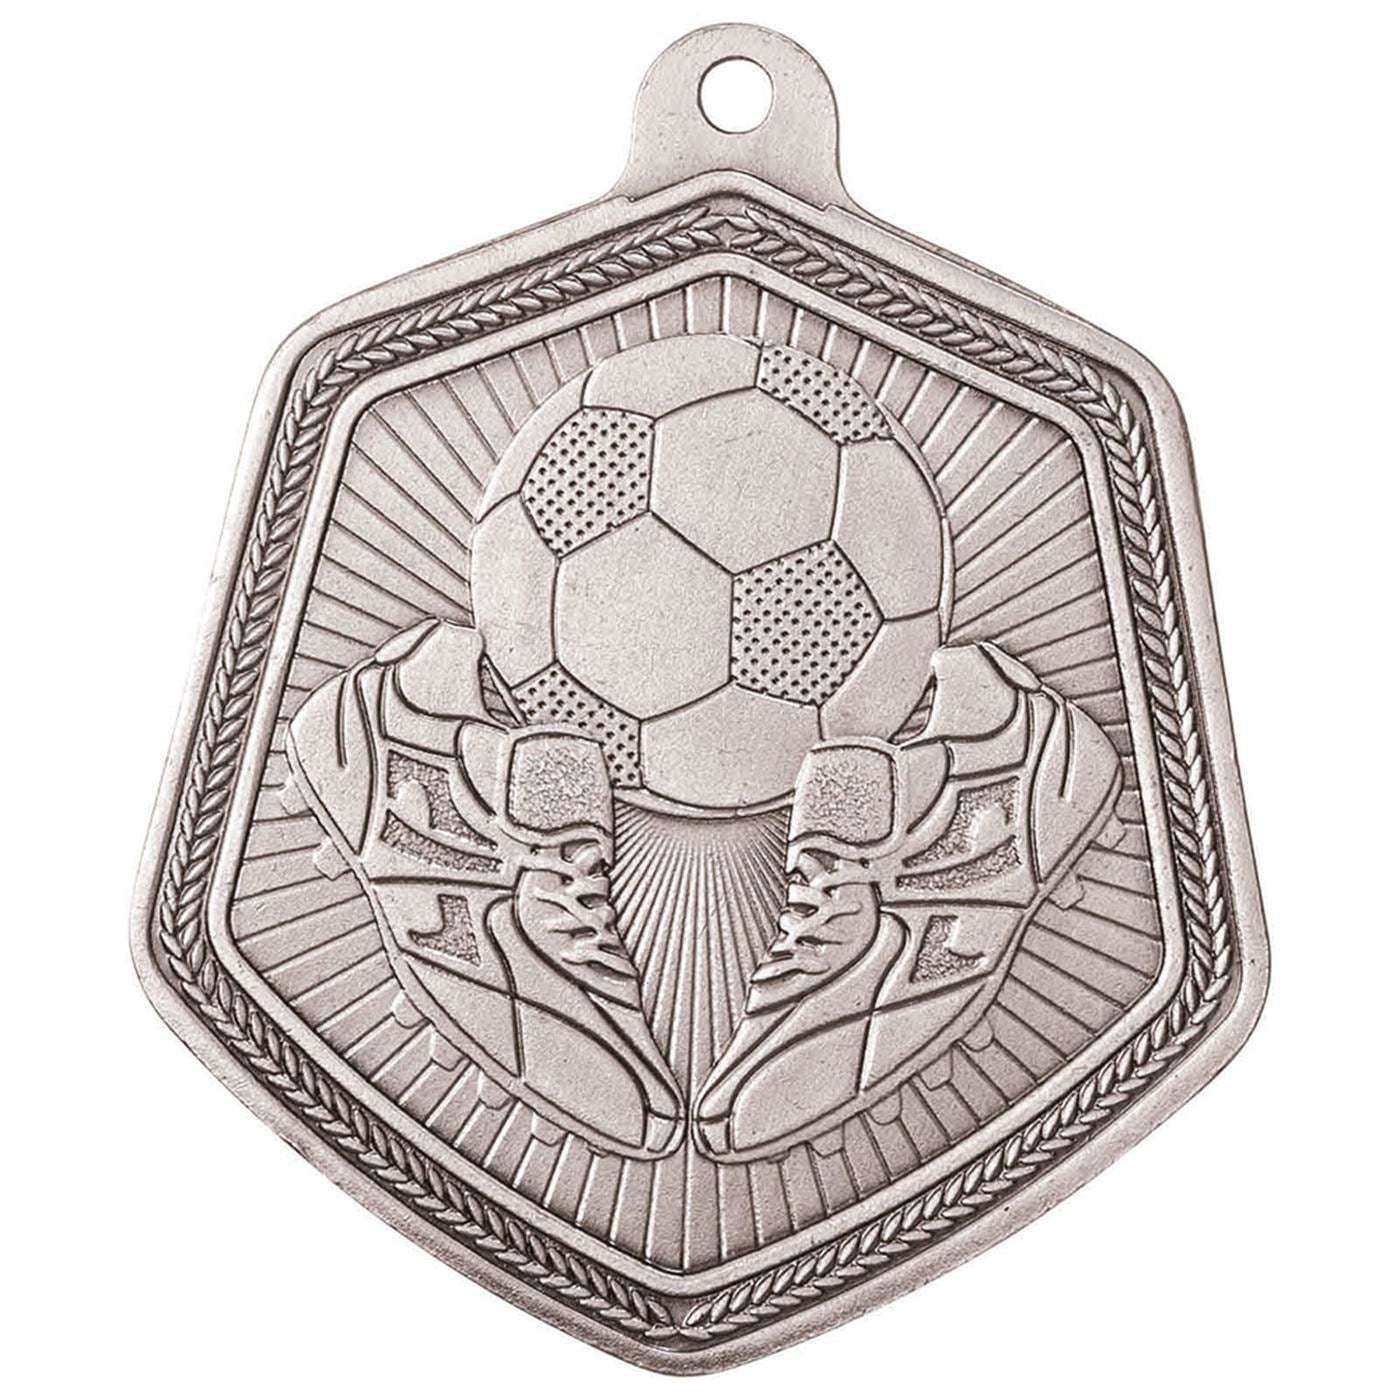 Falcon Boot & Ball Football Medal - 6.5cm